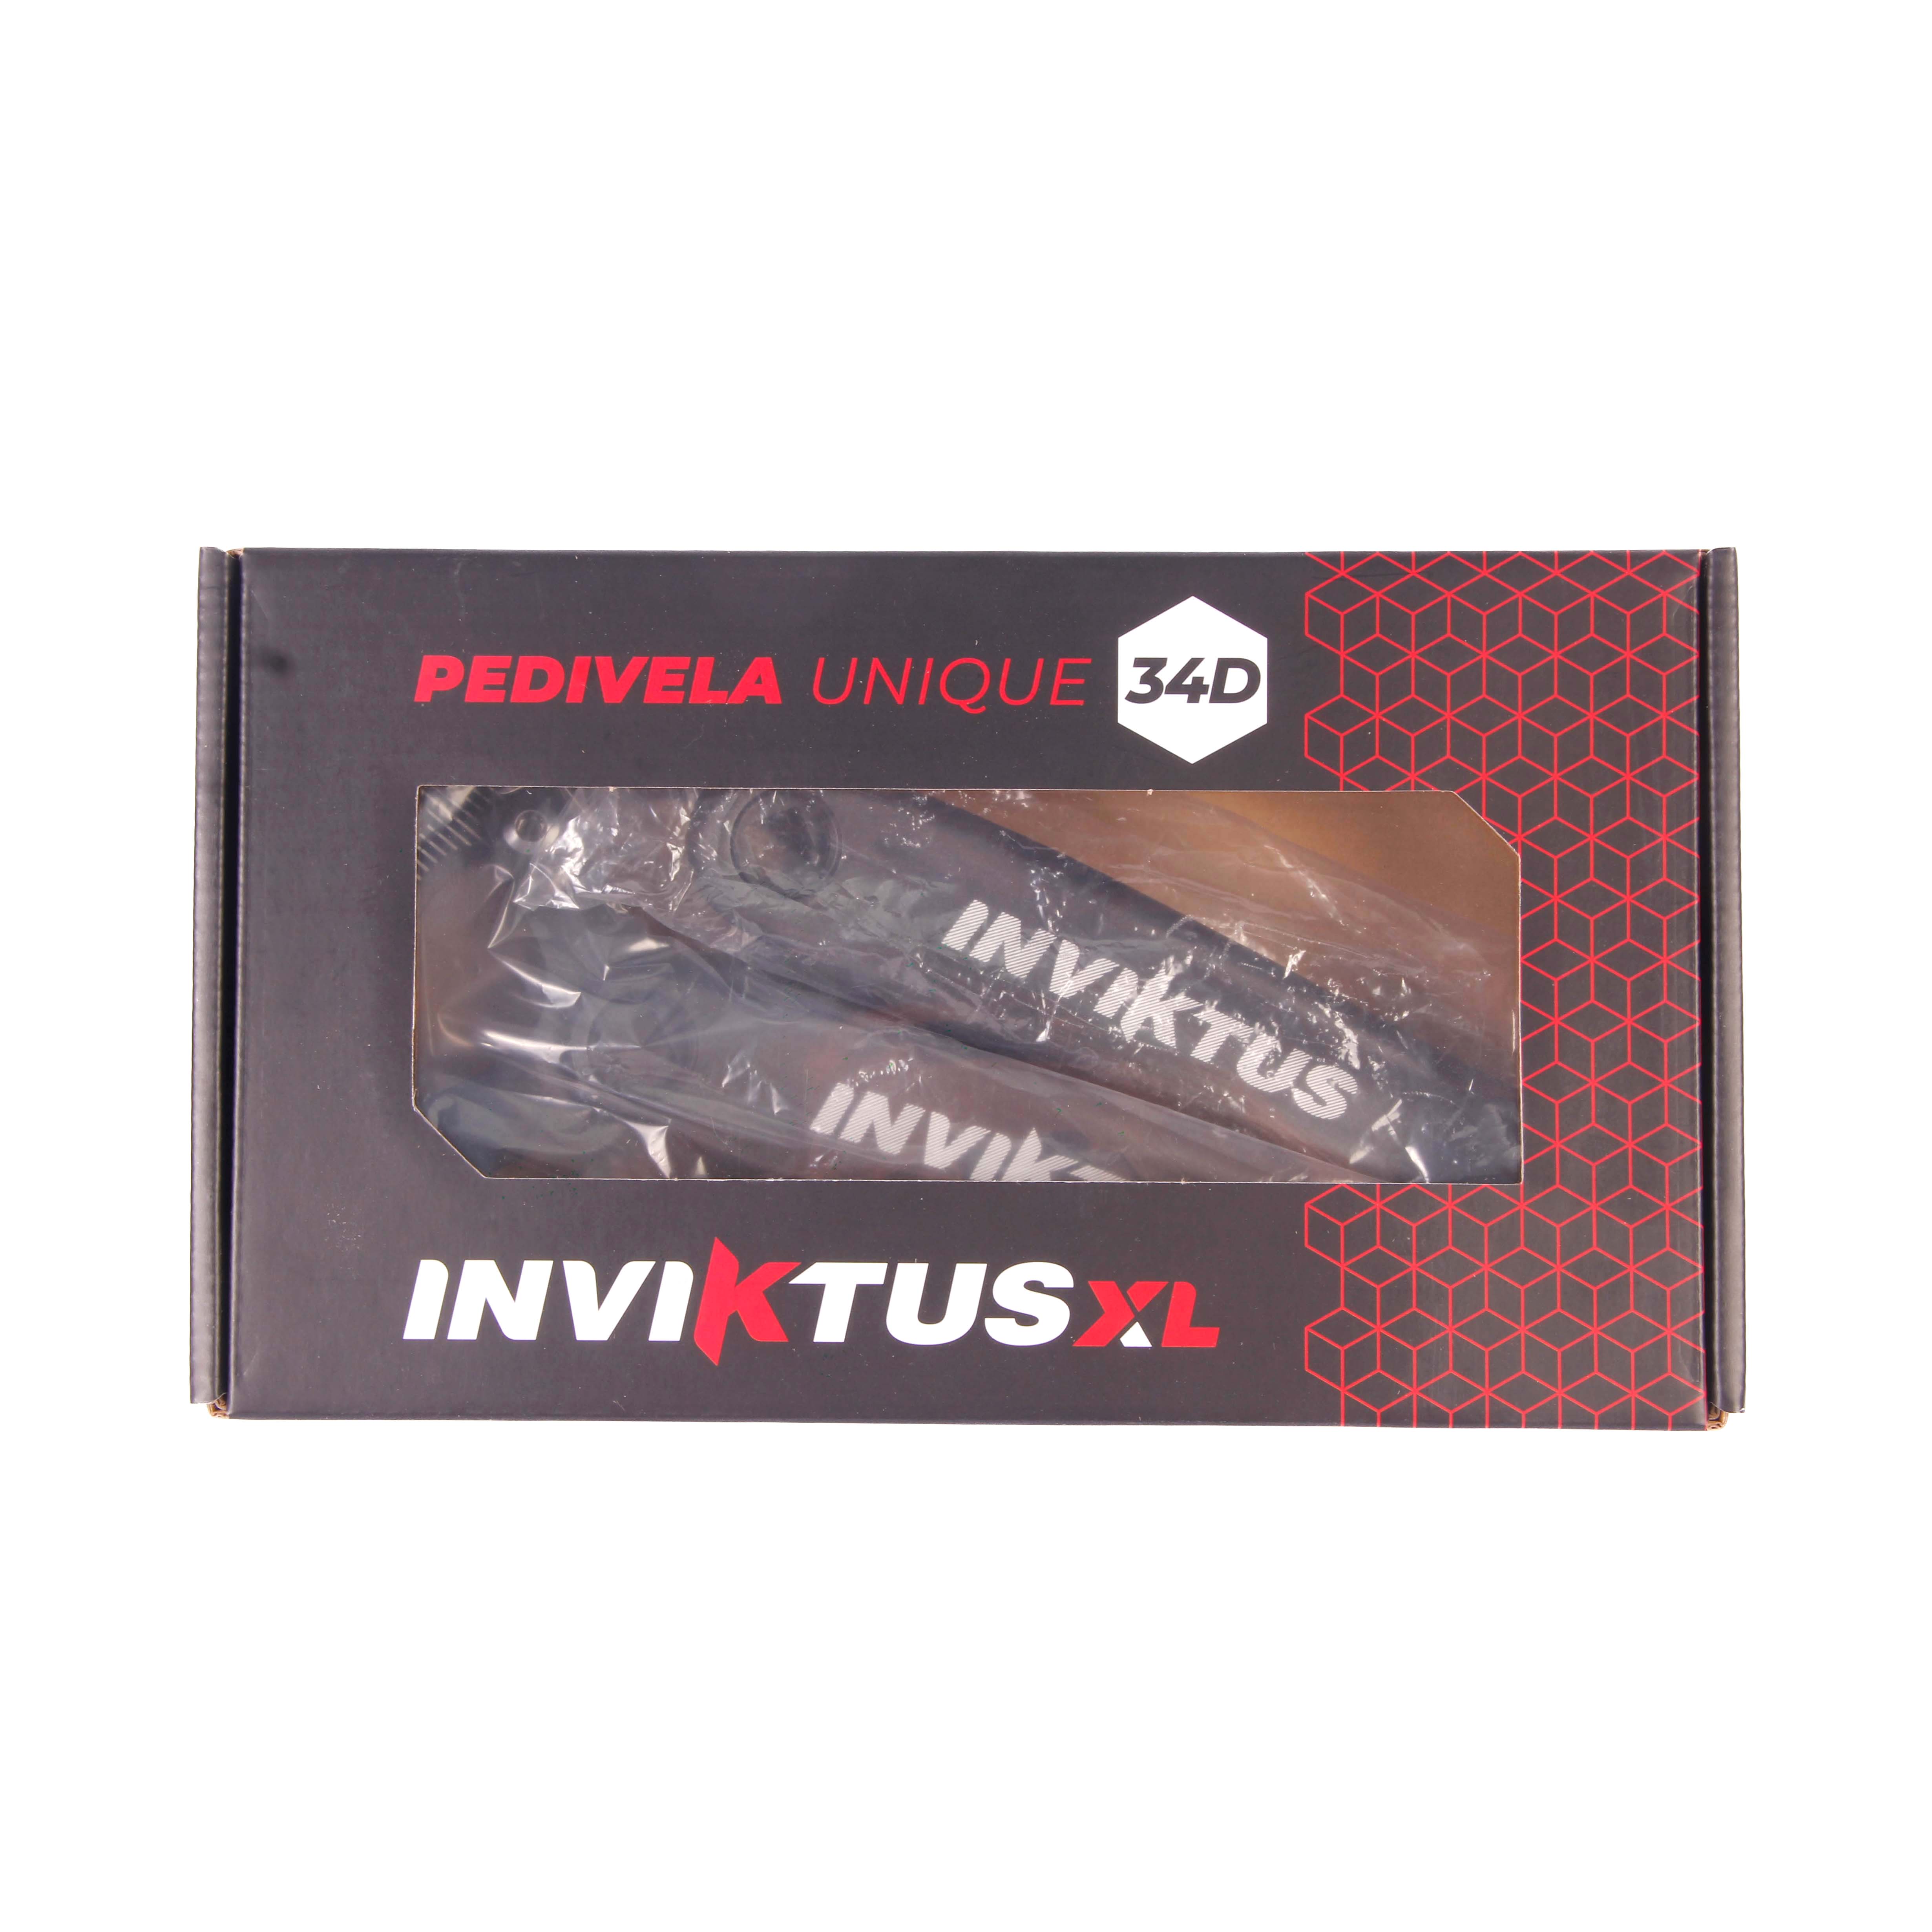 Pedivela 24/34/42D Index Revestida Cinza PC39 Inviktus - Inviktus Bike